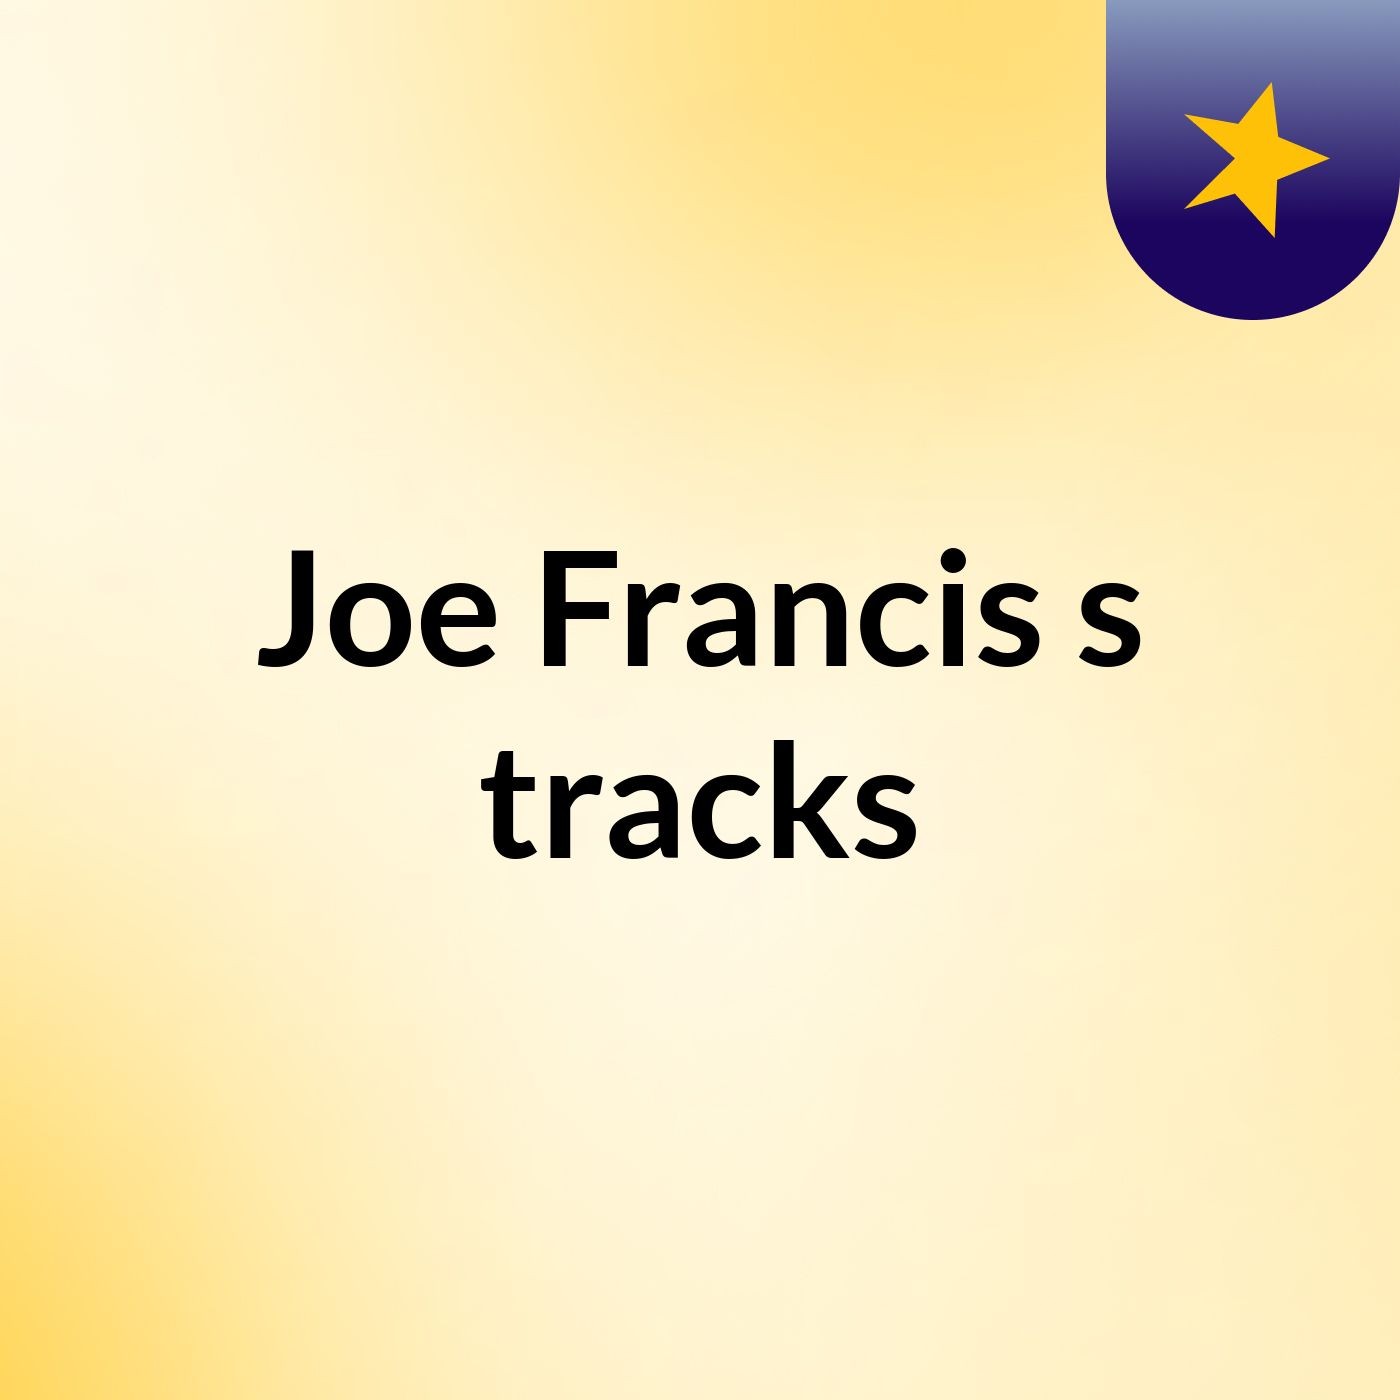 Joe Francis's tracks